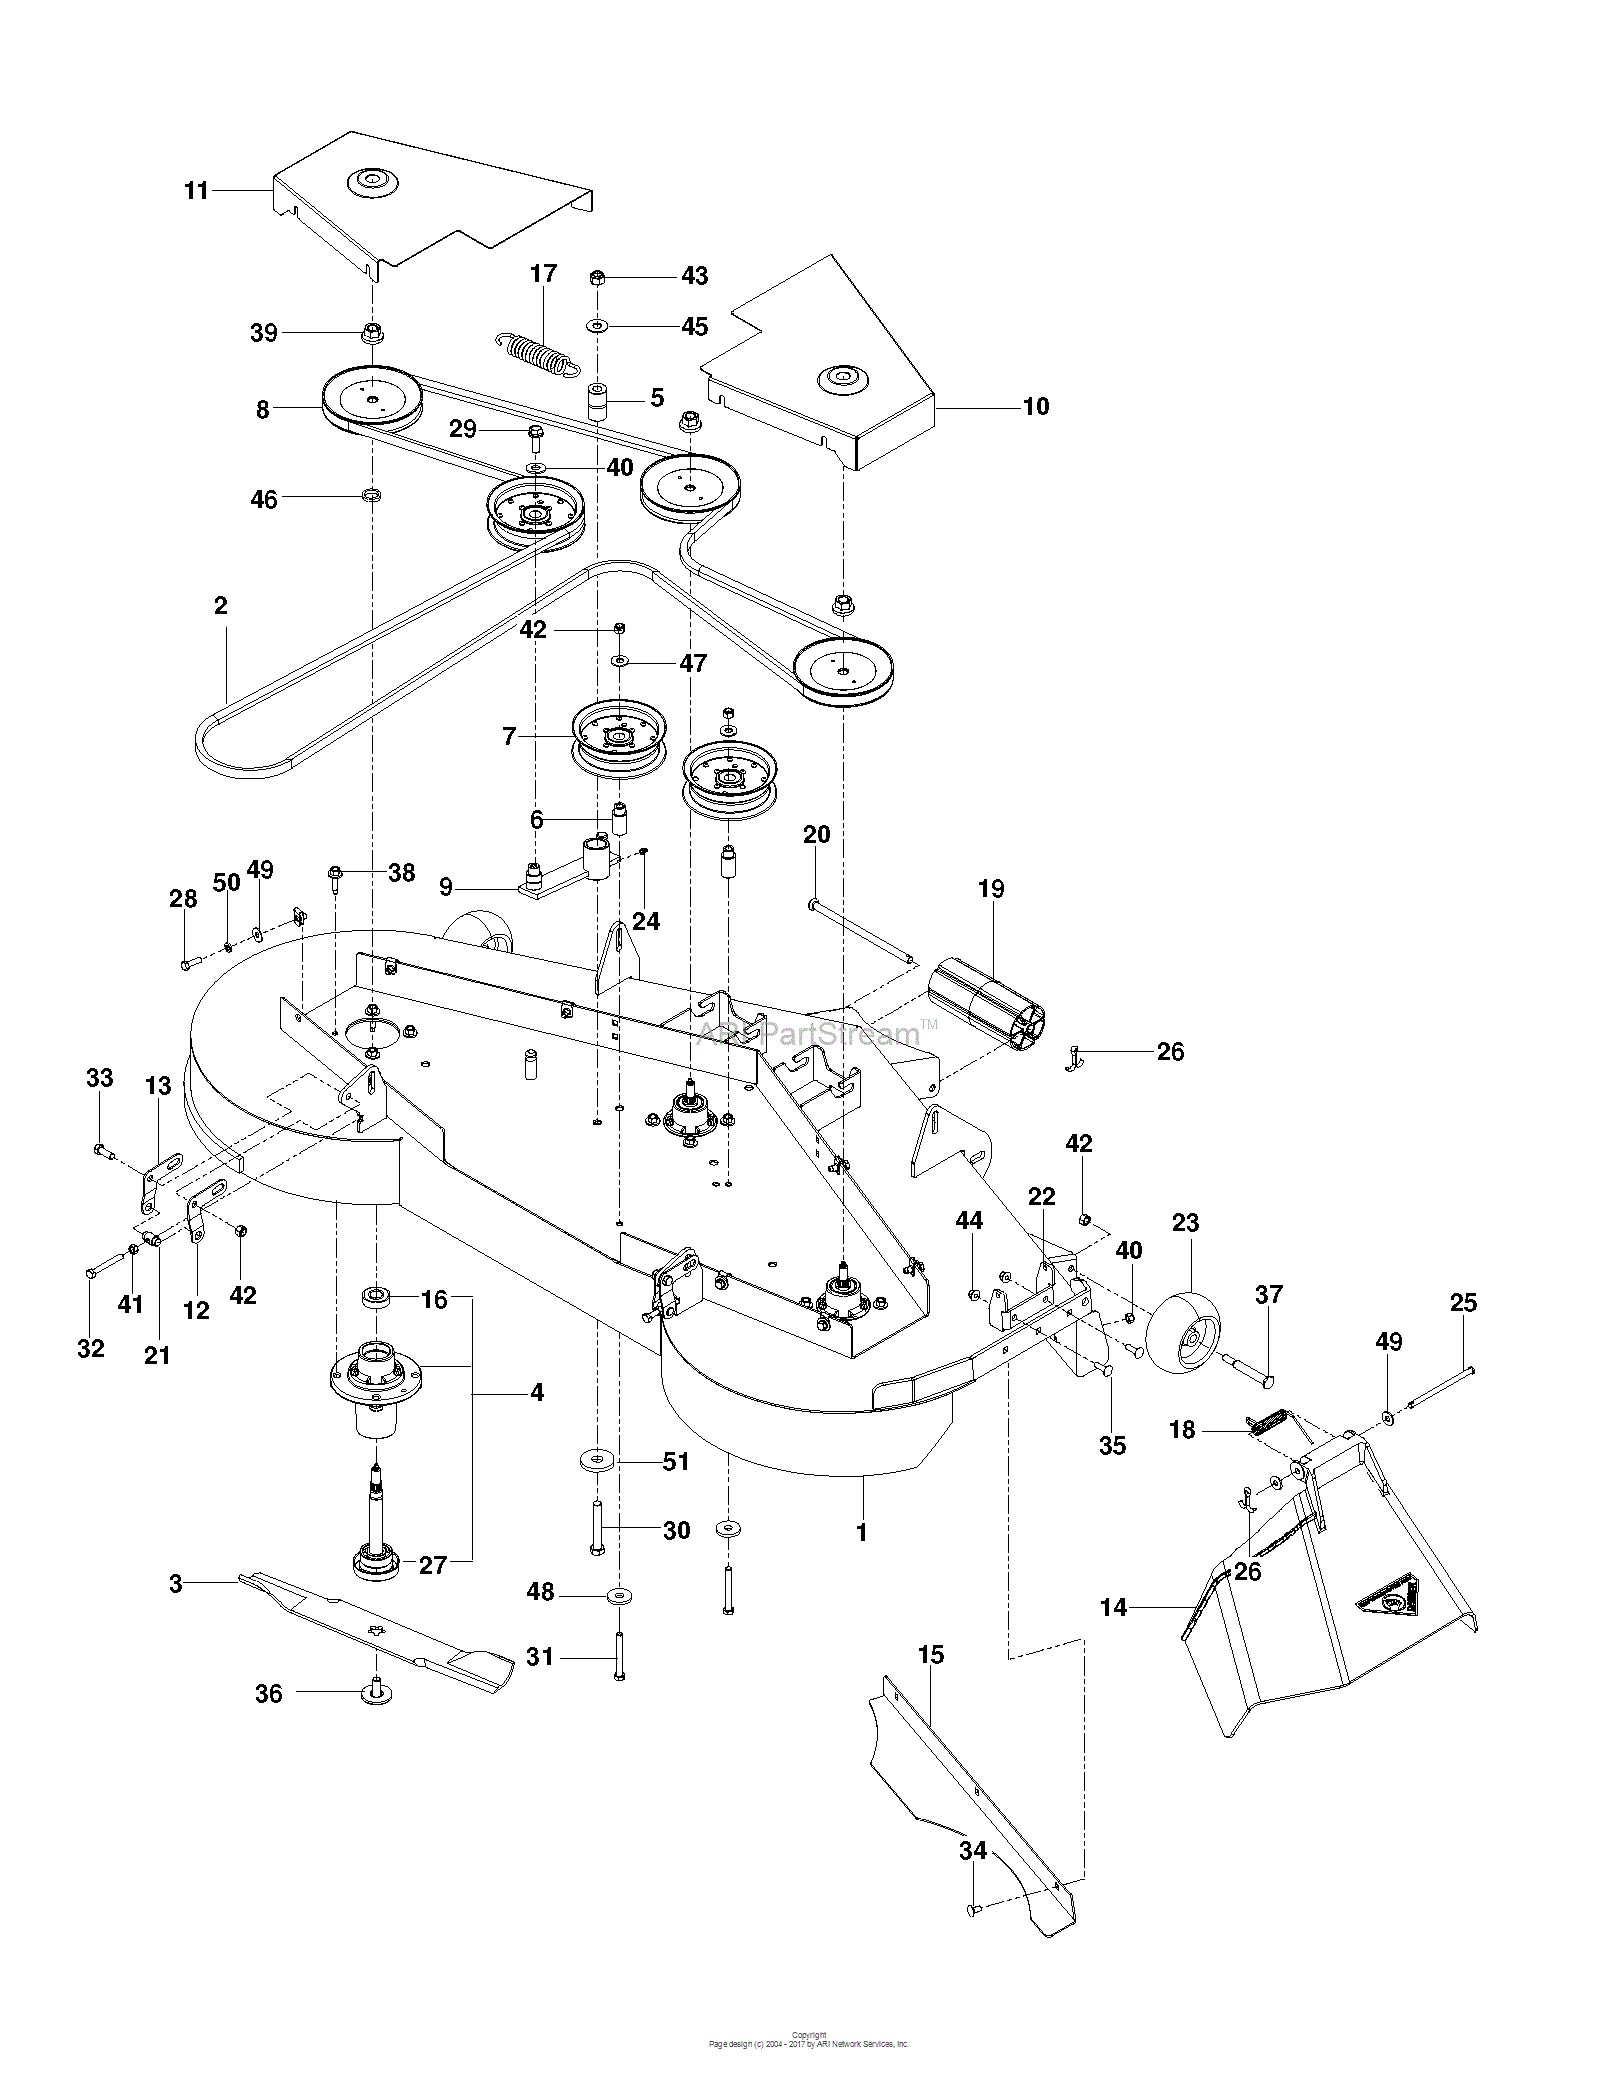 Dixon ULTRA 61 - 966611805 (2013-10) Parts Diagram for MOWER DECK